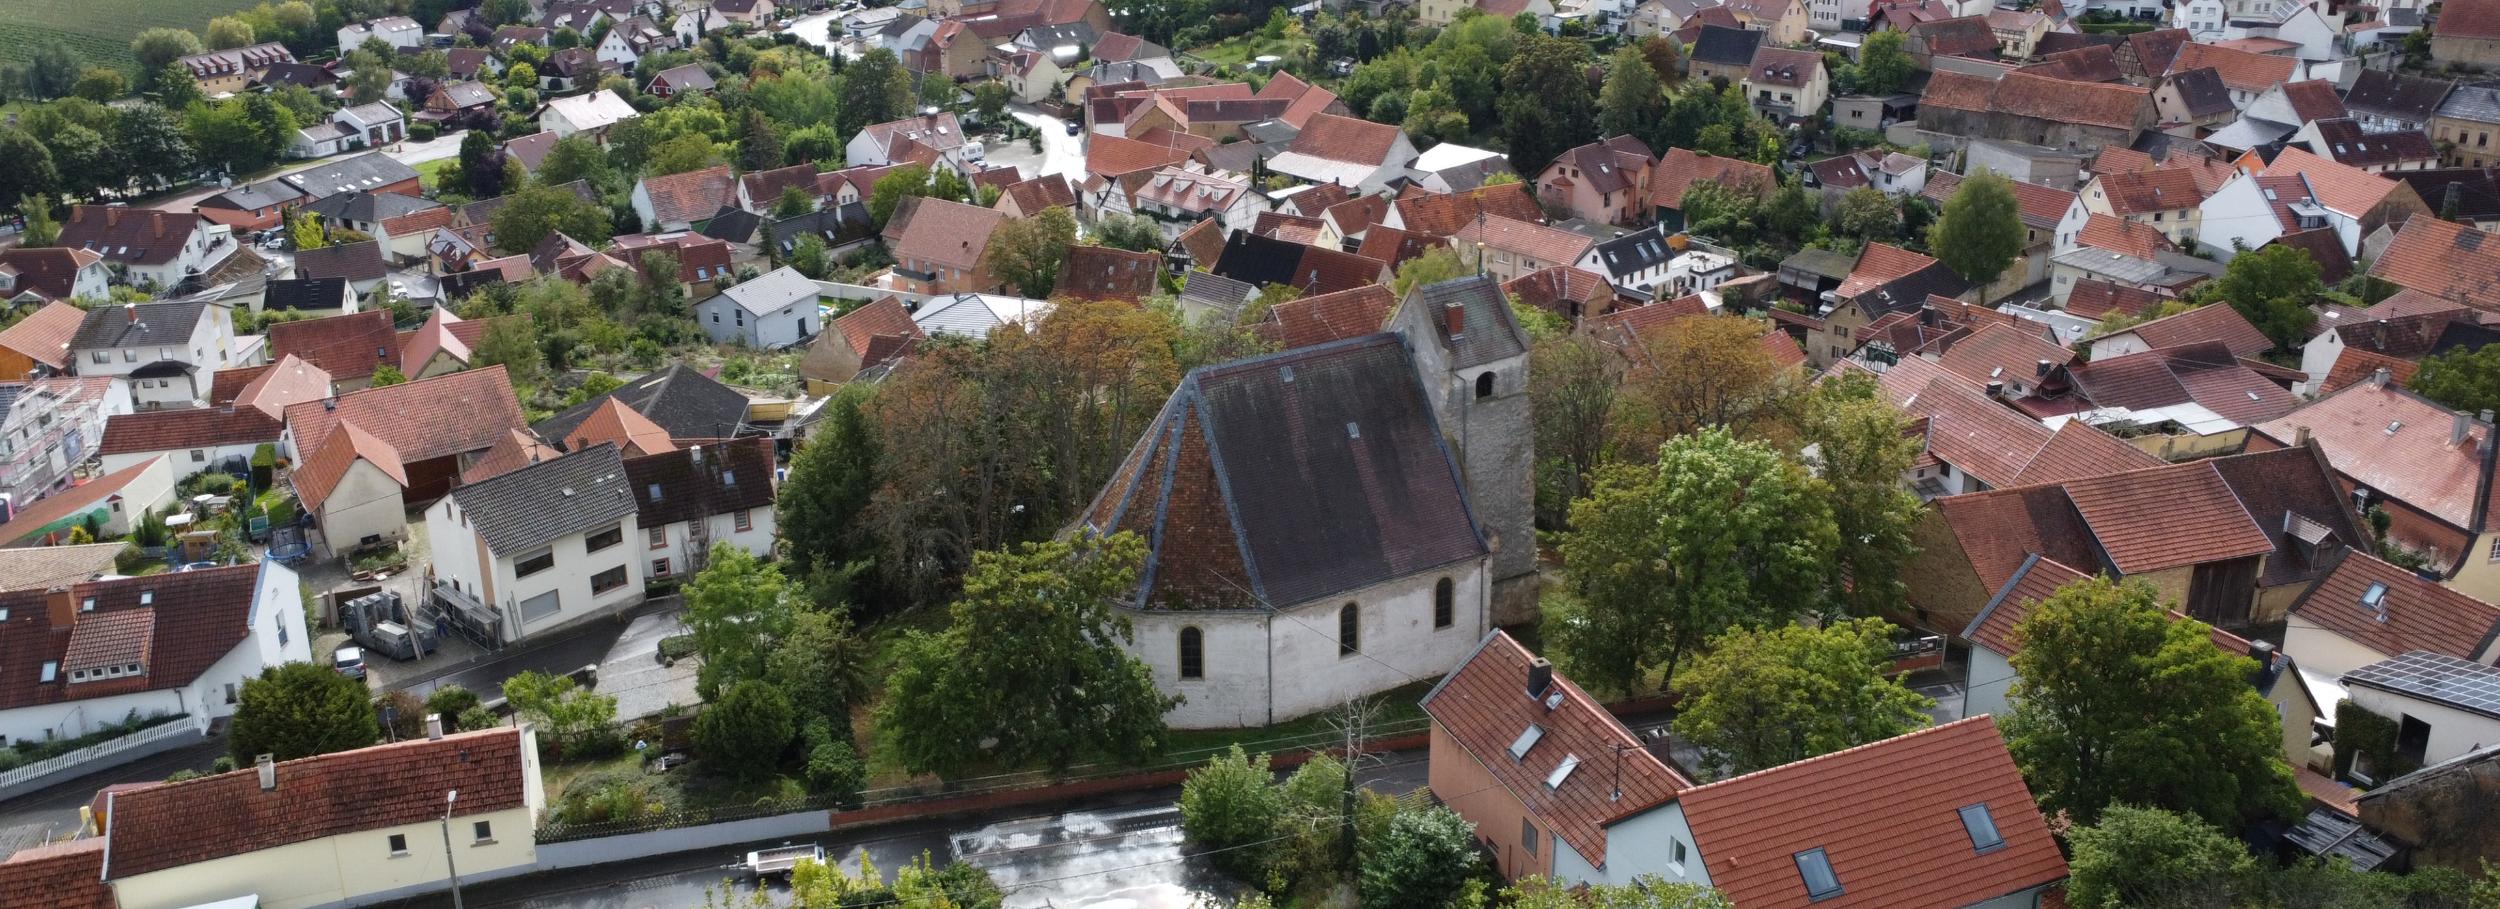 Blick auf Spiesheim